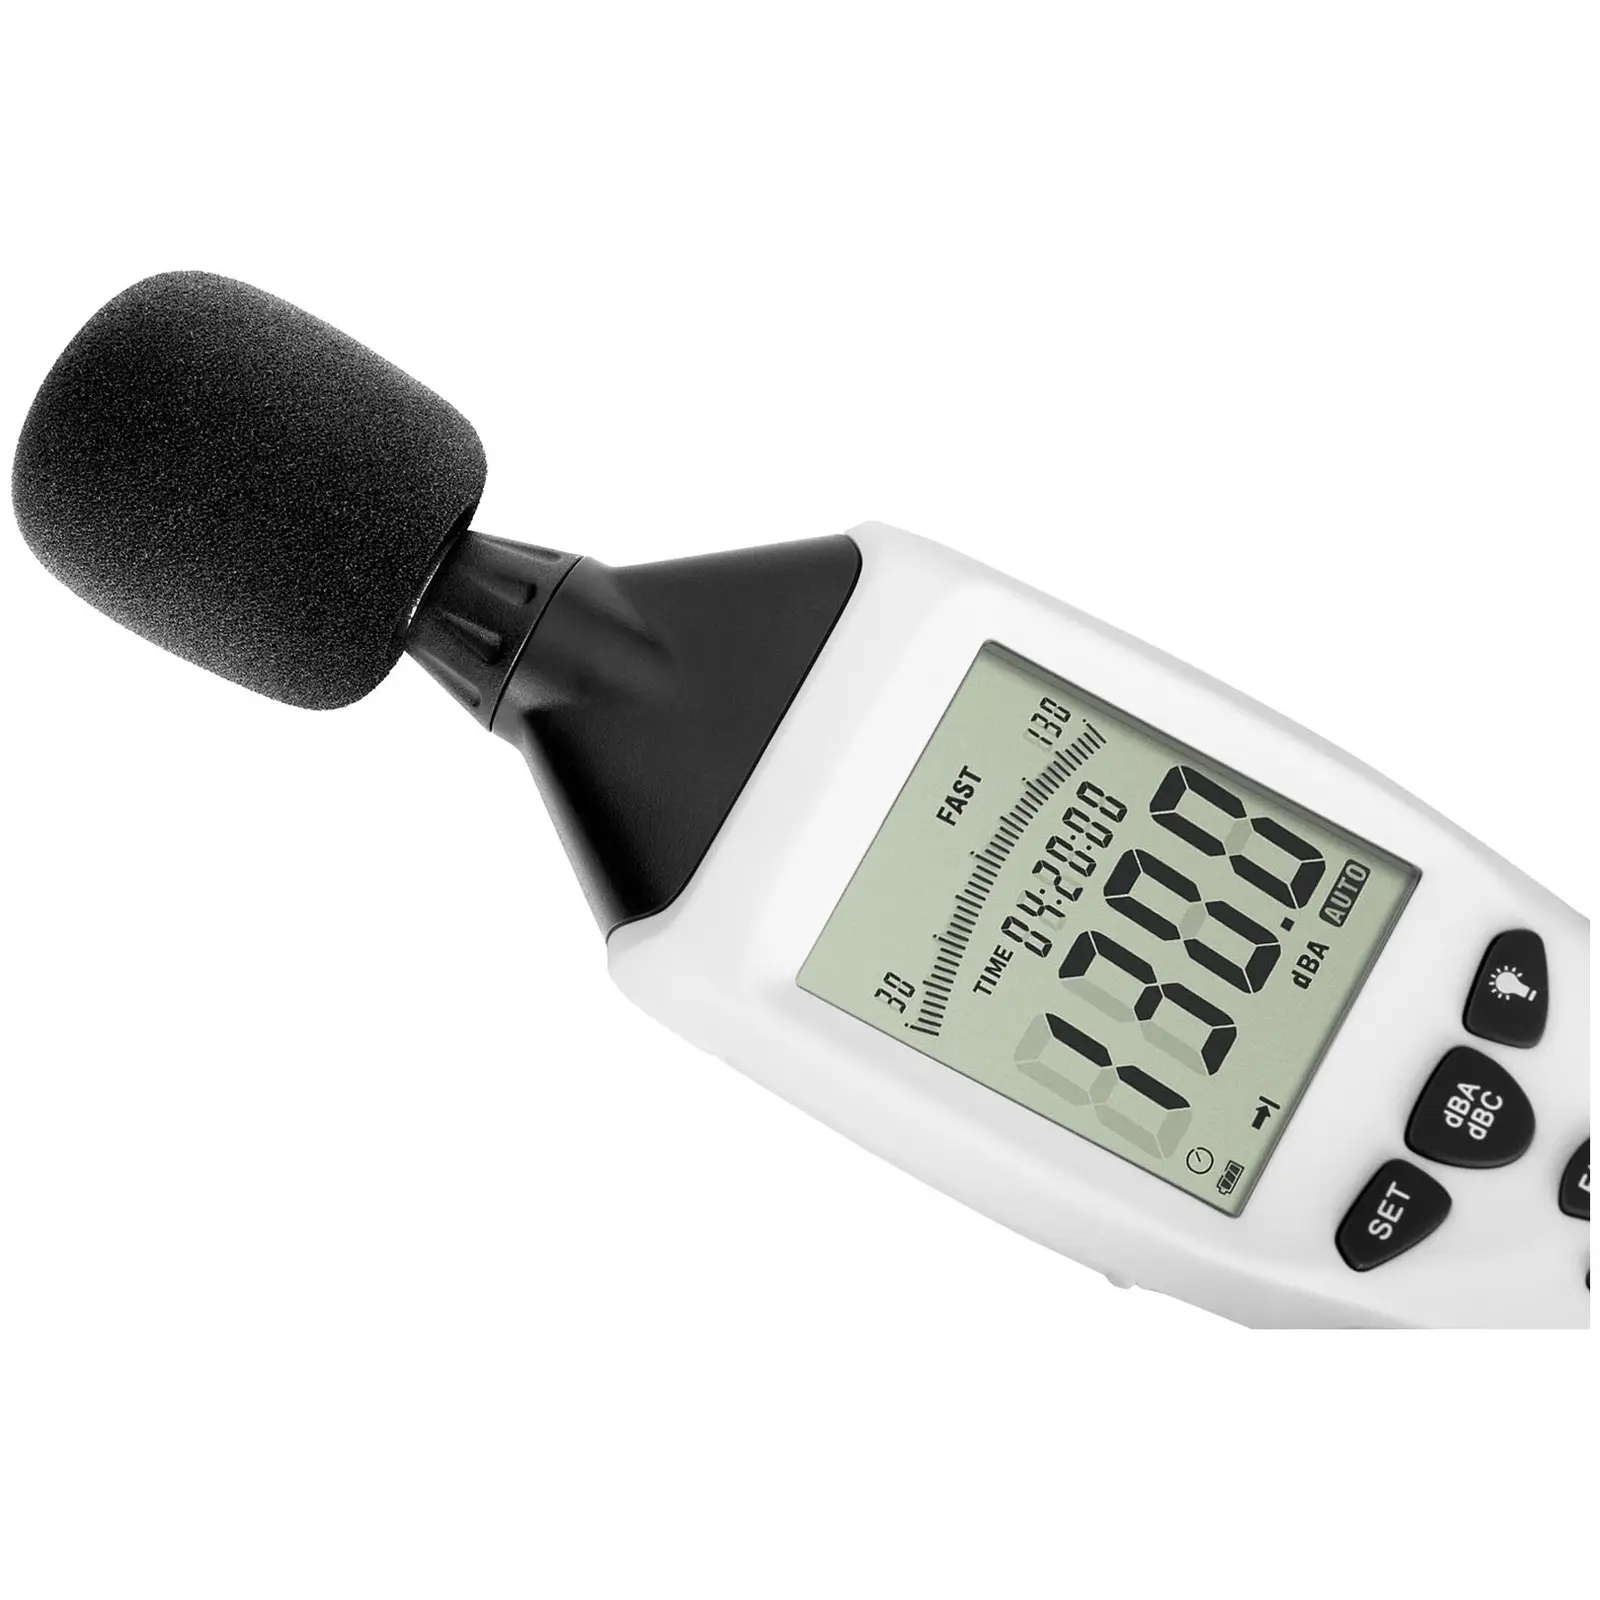 Fonometro professionale - da 30 a 130 dB - LCD - USB - Con borsa e vari accessori